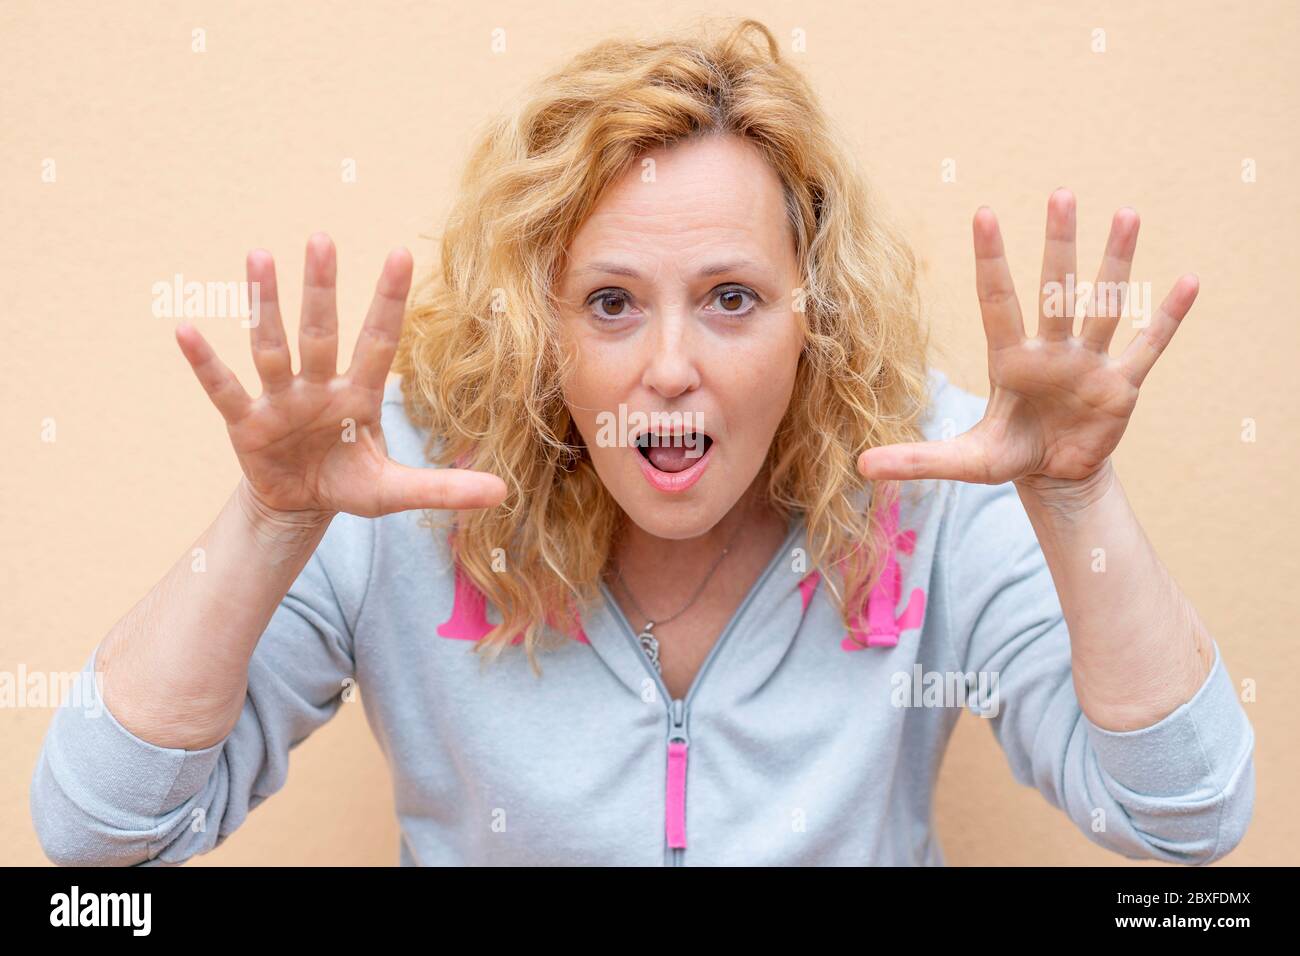 Eine weiße Frau macht einen lustigen Ausdruck, indem sie ihre Hände nahe an ihr Gesicht hebt Stockfoto